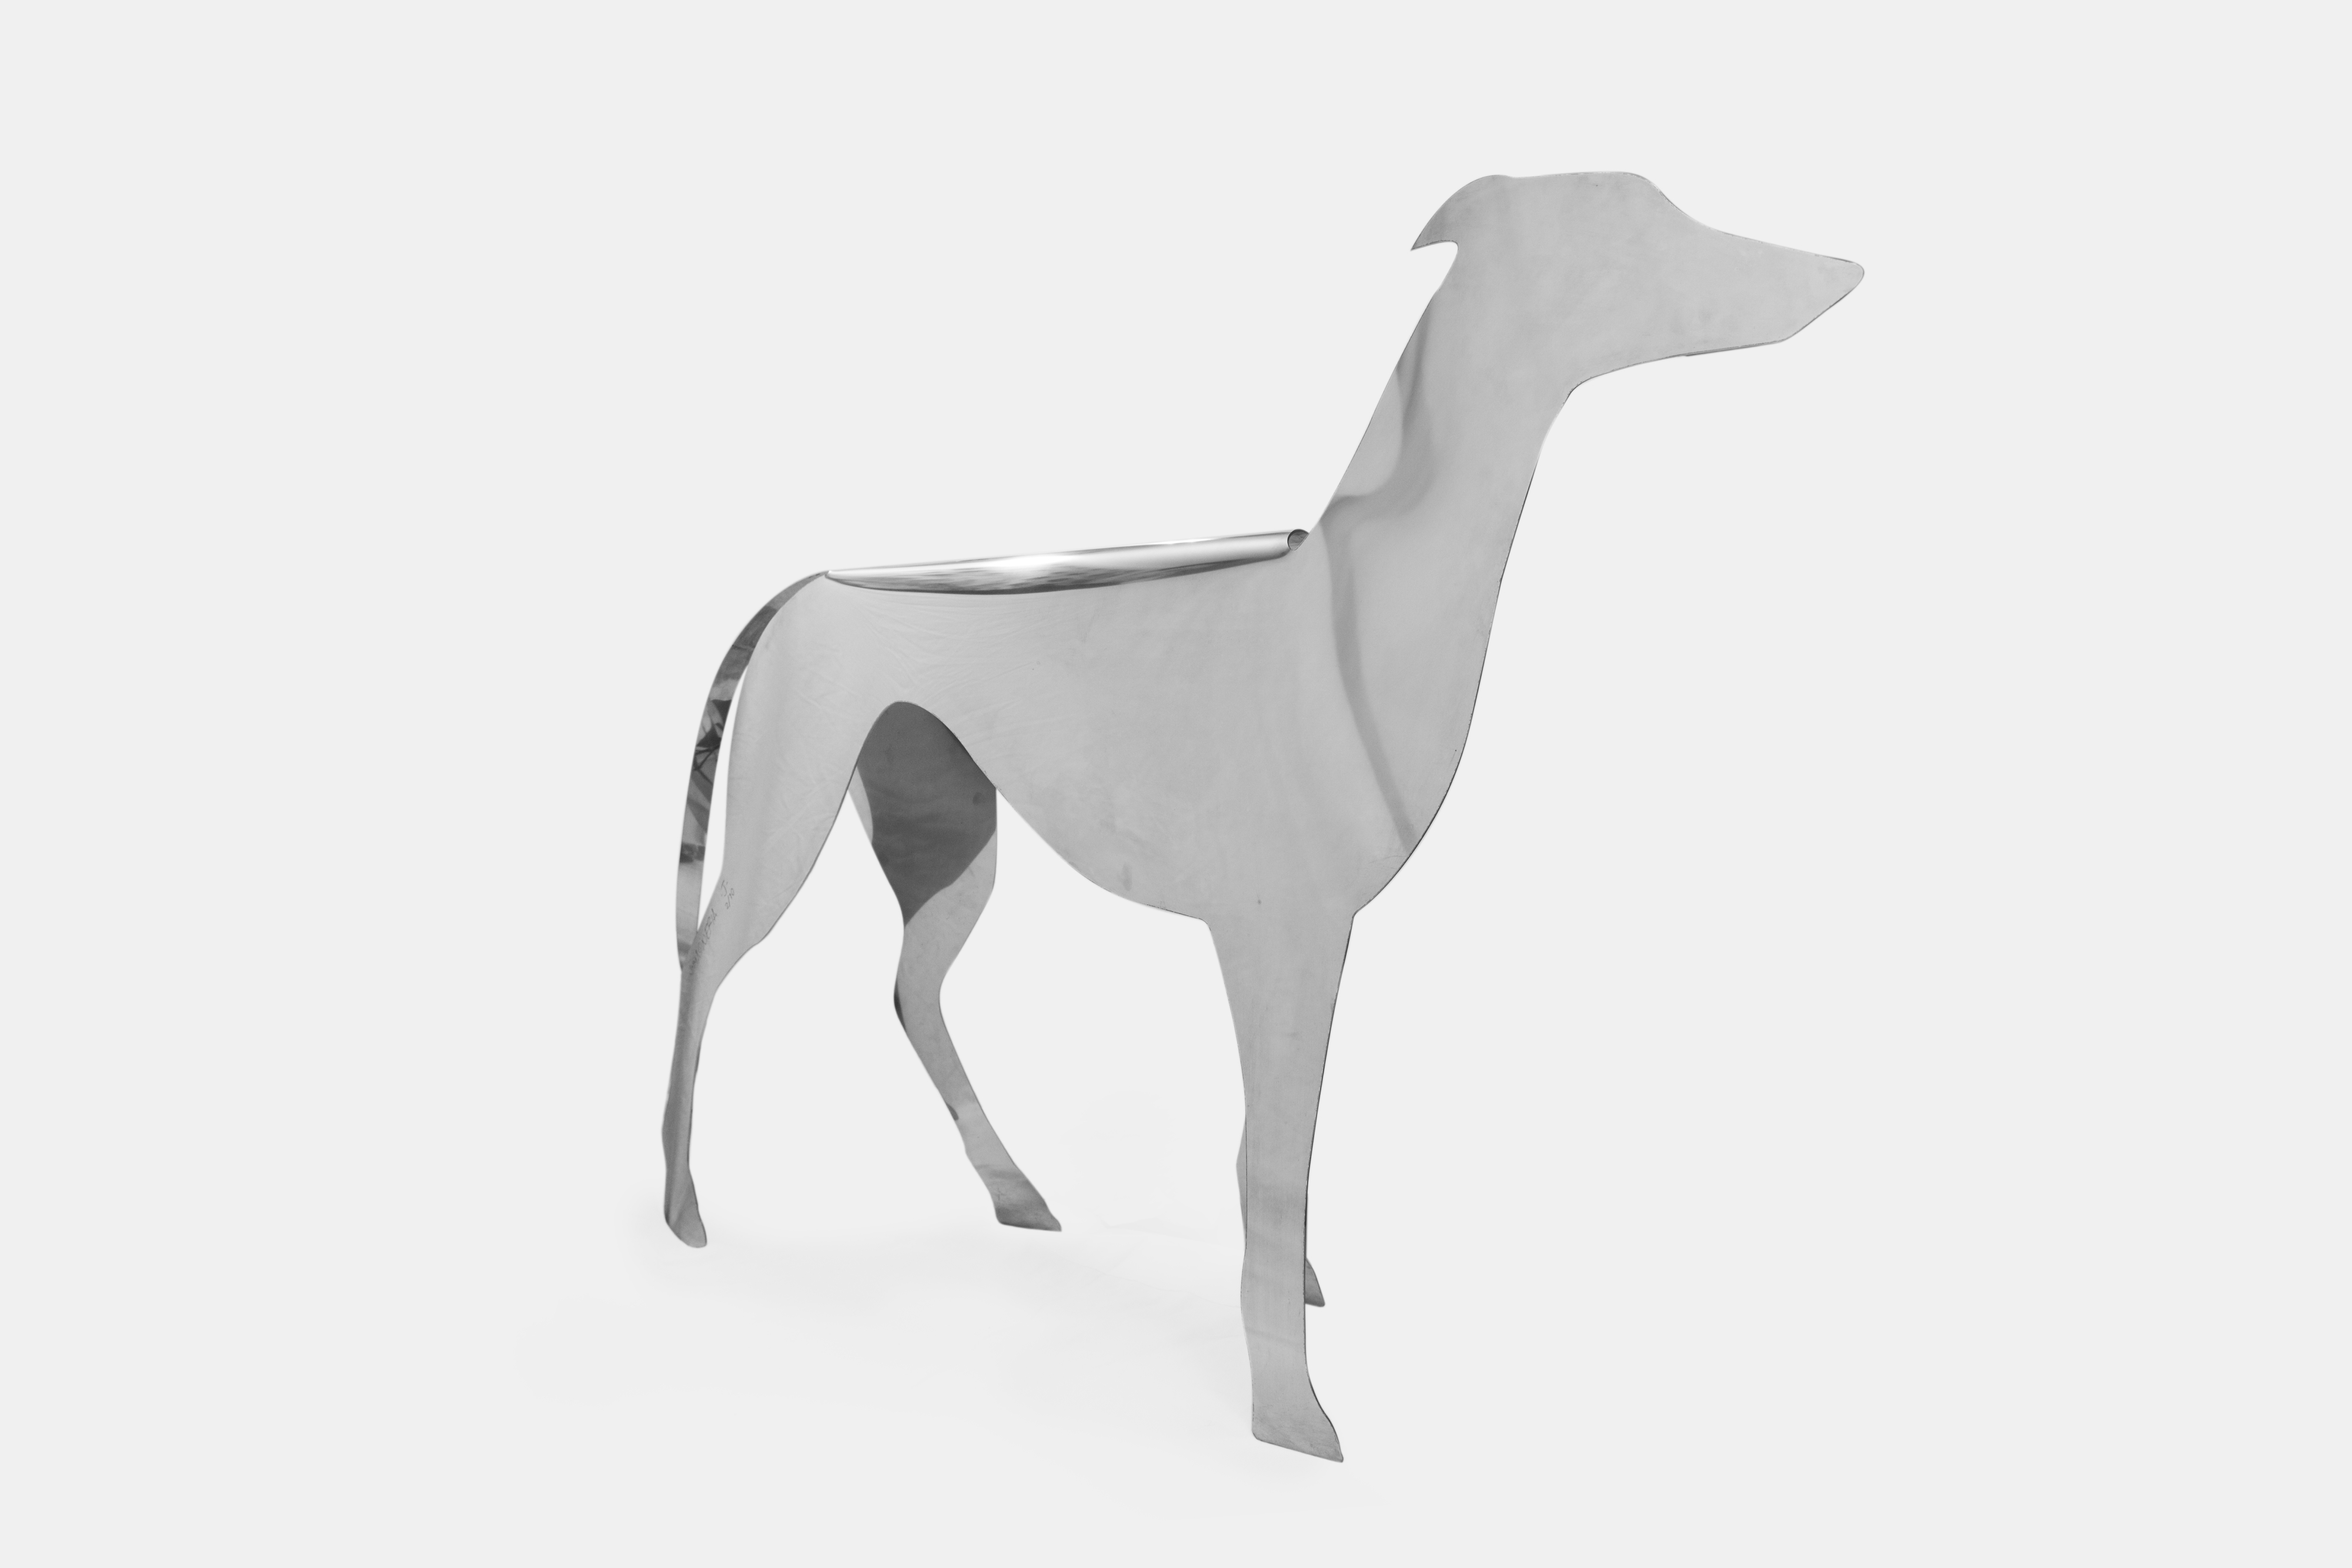 GIOVANNI LORA, Decorative dog sculpture, circa 1970, giovanni, lora, dog, decorative, sculpture, stainless steel, immagineria, italy, limited, edition, animal